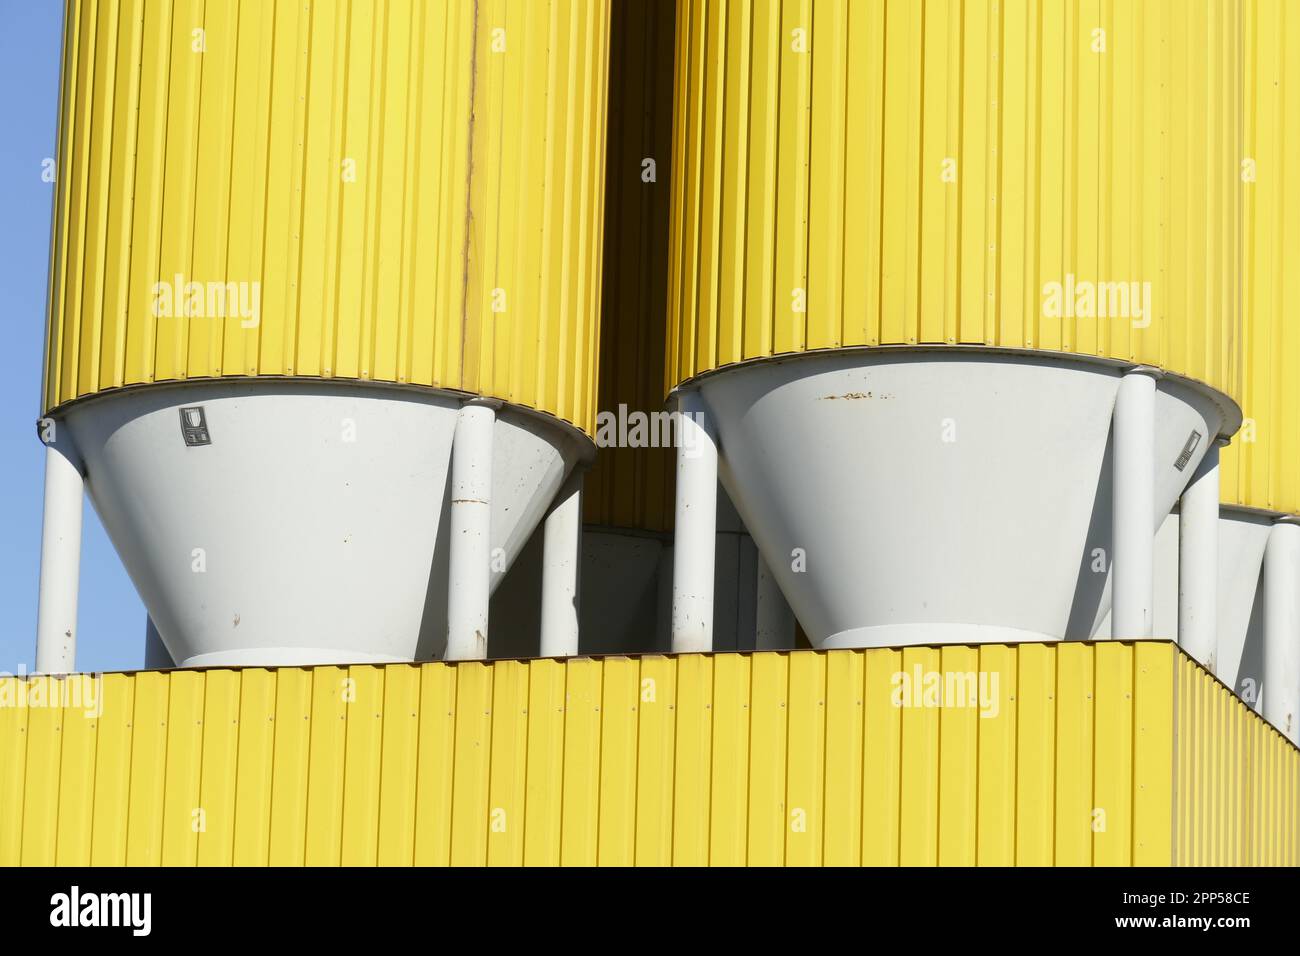 Gelbe Silos für Baumaterial in Hemelinger Hafen, Bremen, Deutschland,  Europa Stockfotografie - Alamy